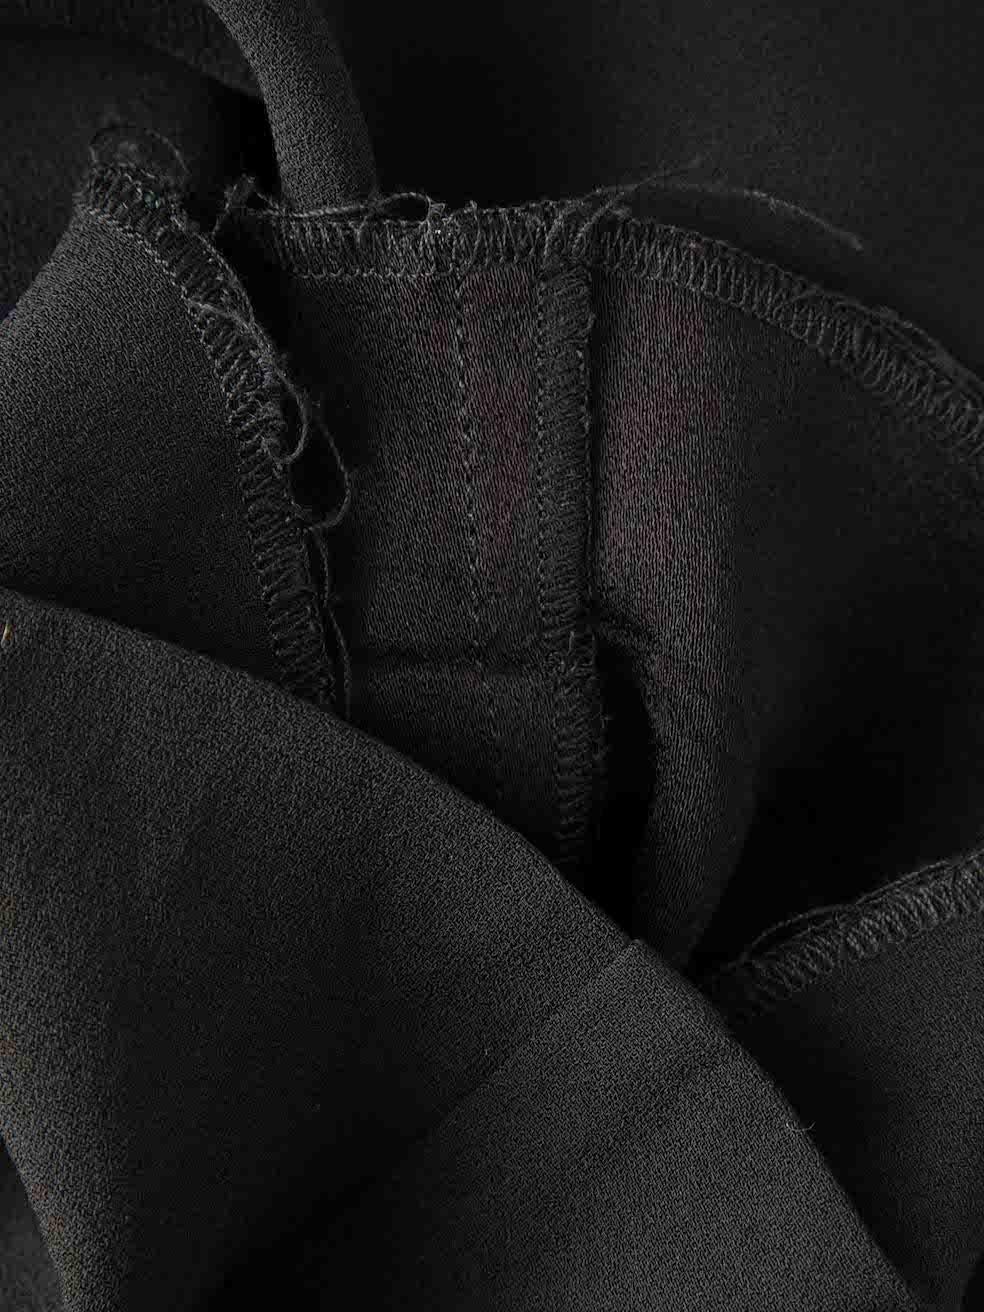 Women's Black Asymmetric Zipped Jumpsuit Size XS For Sale